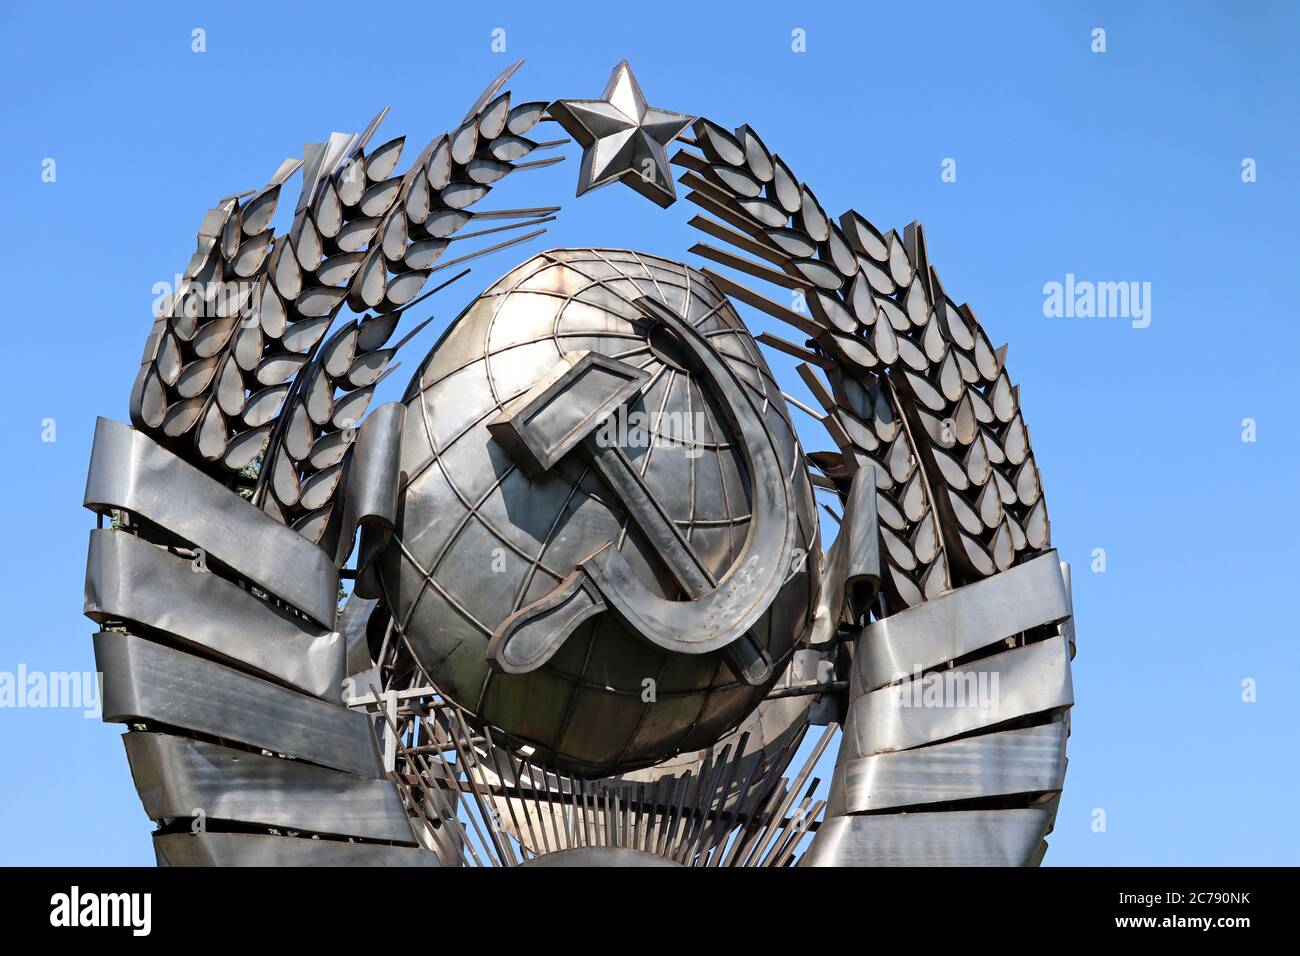 Stemma dell'URSS, simbolo comunista e socialista. Stemma sovietico metallico su sfondo blu del cielo Foto Stock